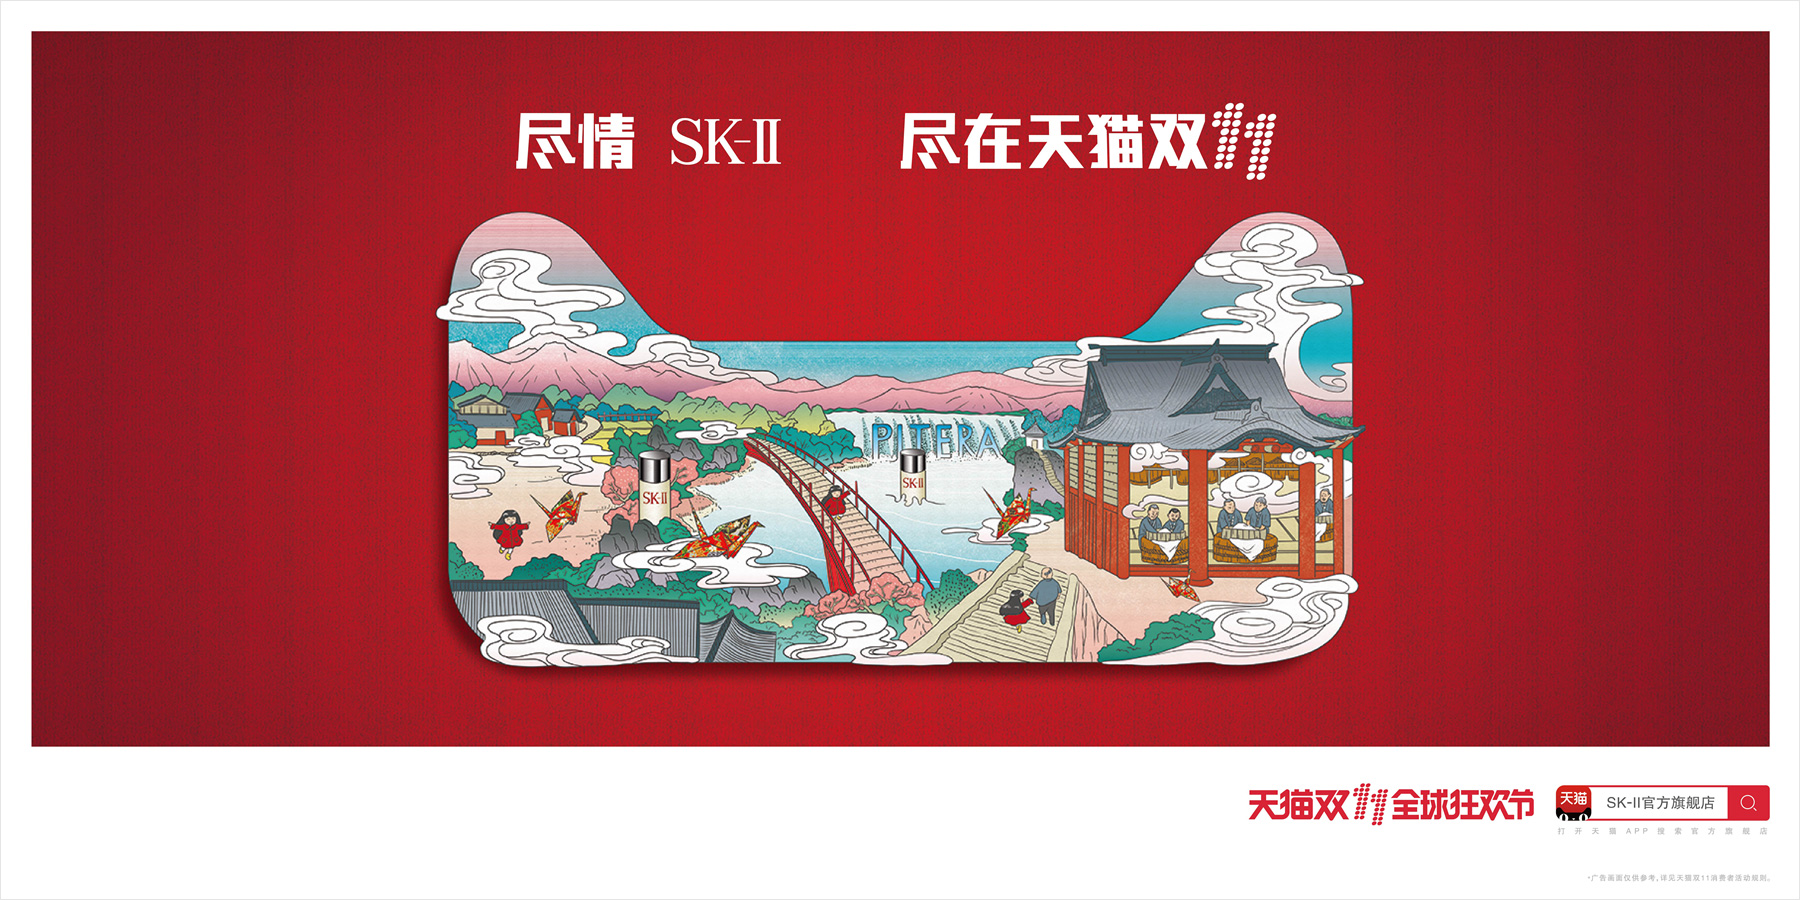 2016年天猫双十一品牌海报 SK-II